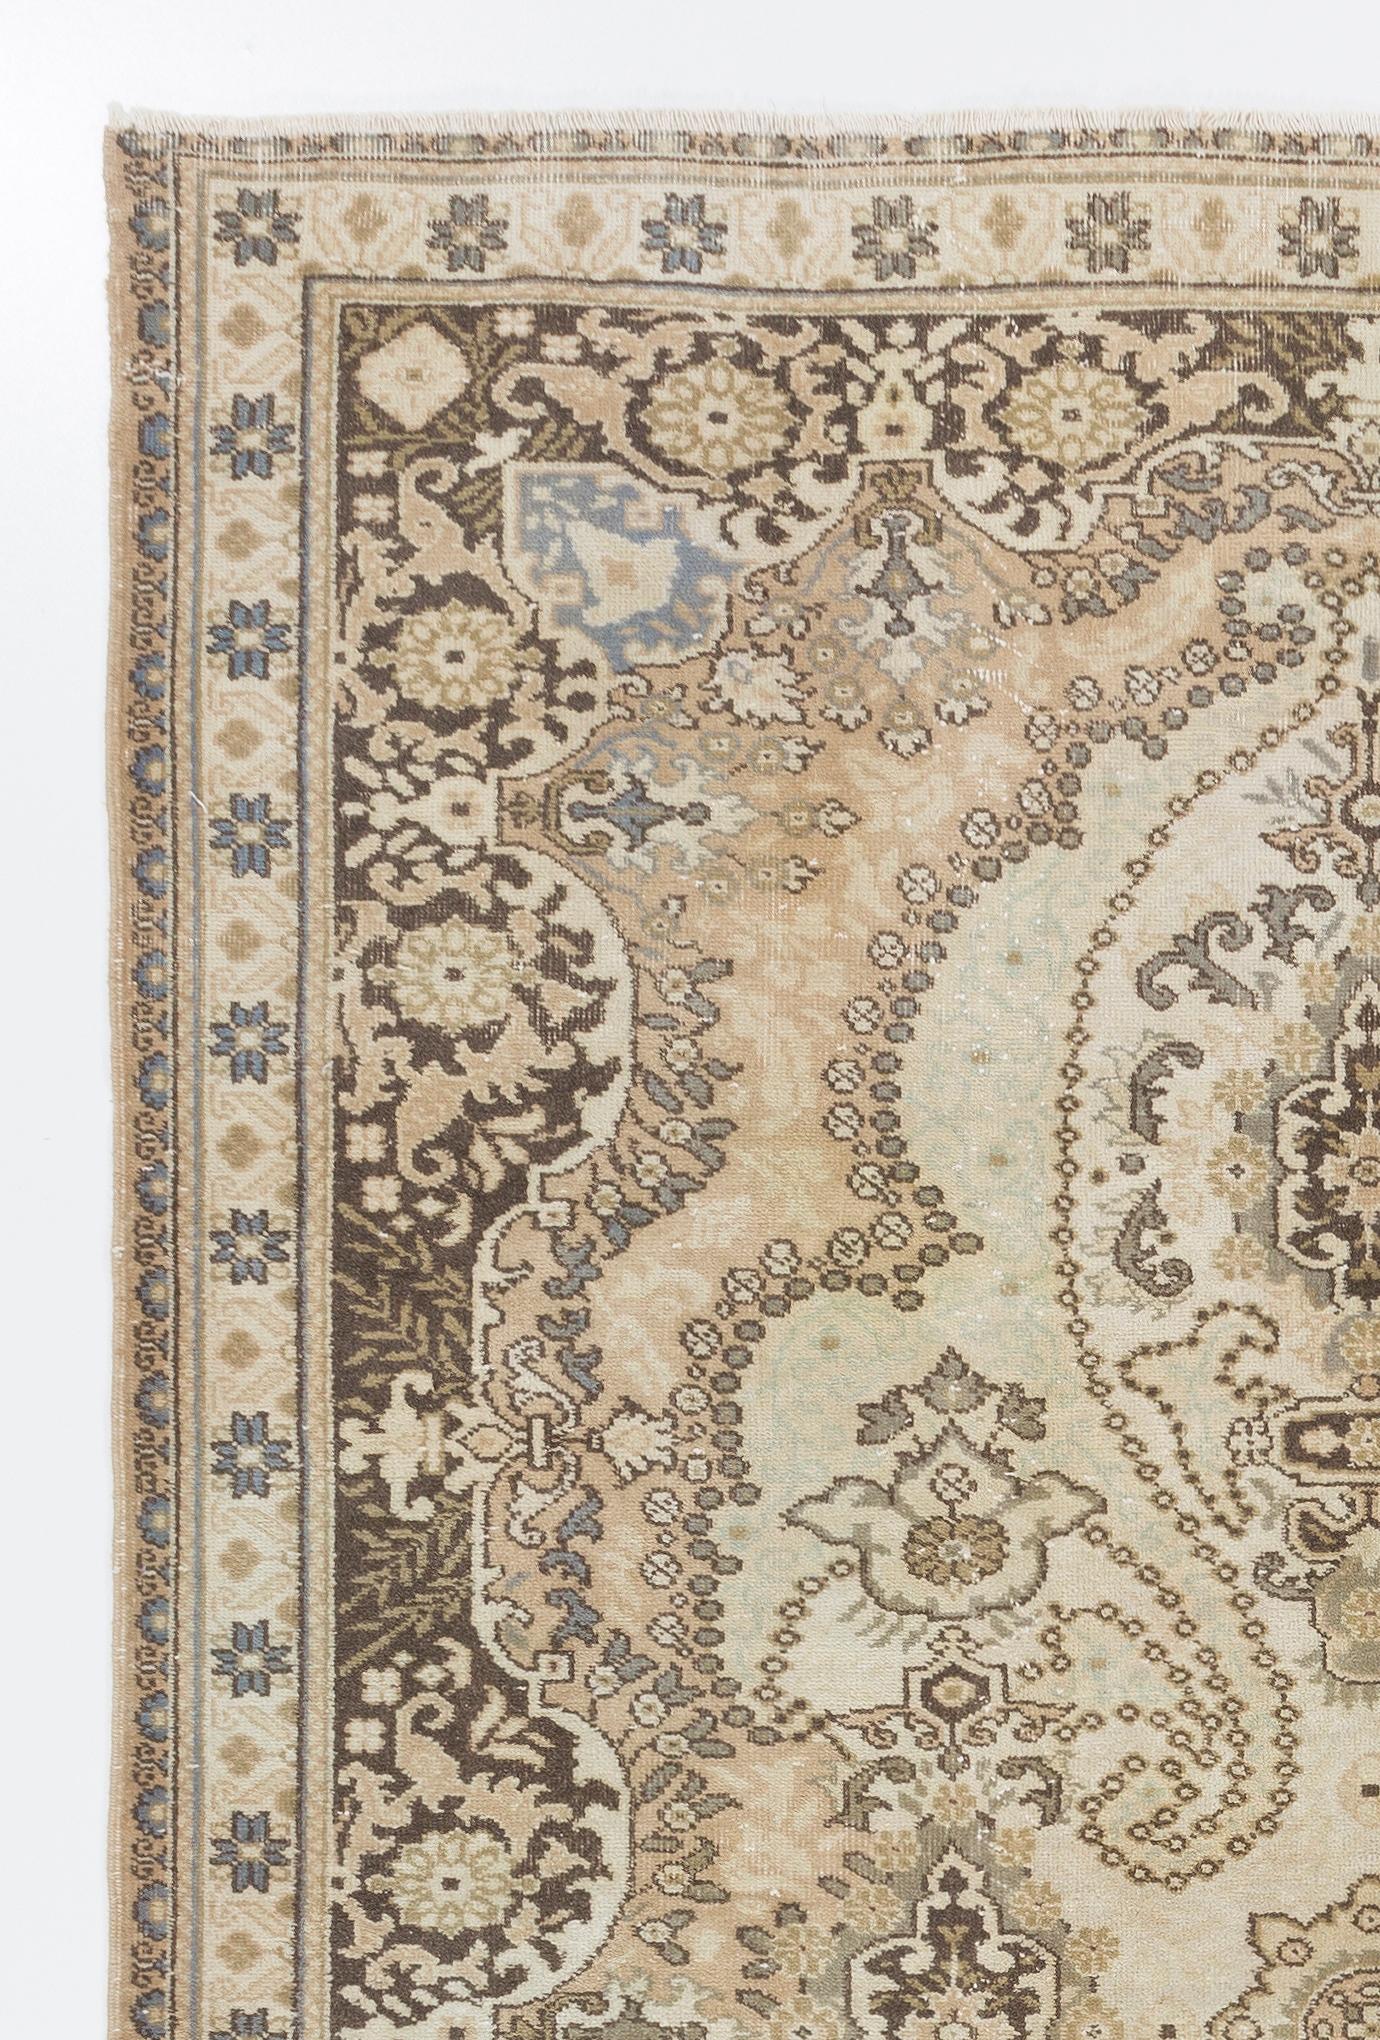 Ce tapis turc vintage des années 1950, finement noué à la main, présente un design élégant et des couleurs douces.
Le tapis a des poils de laine uniformément bas sur une base en coton. Il est lourd et repose à plat sur le sol, en très bon état et